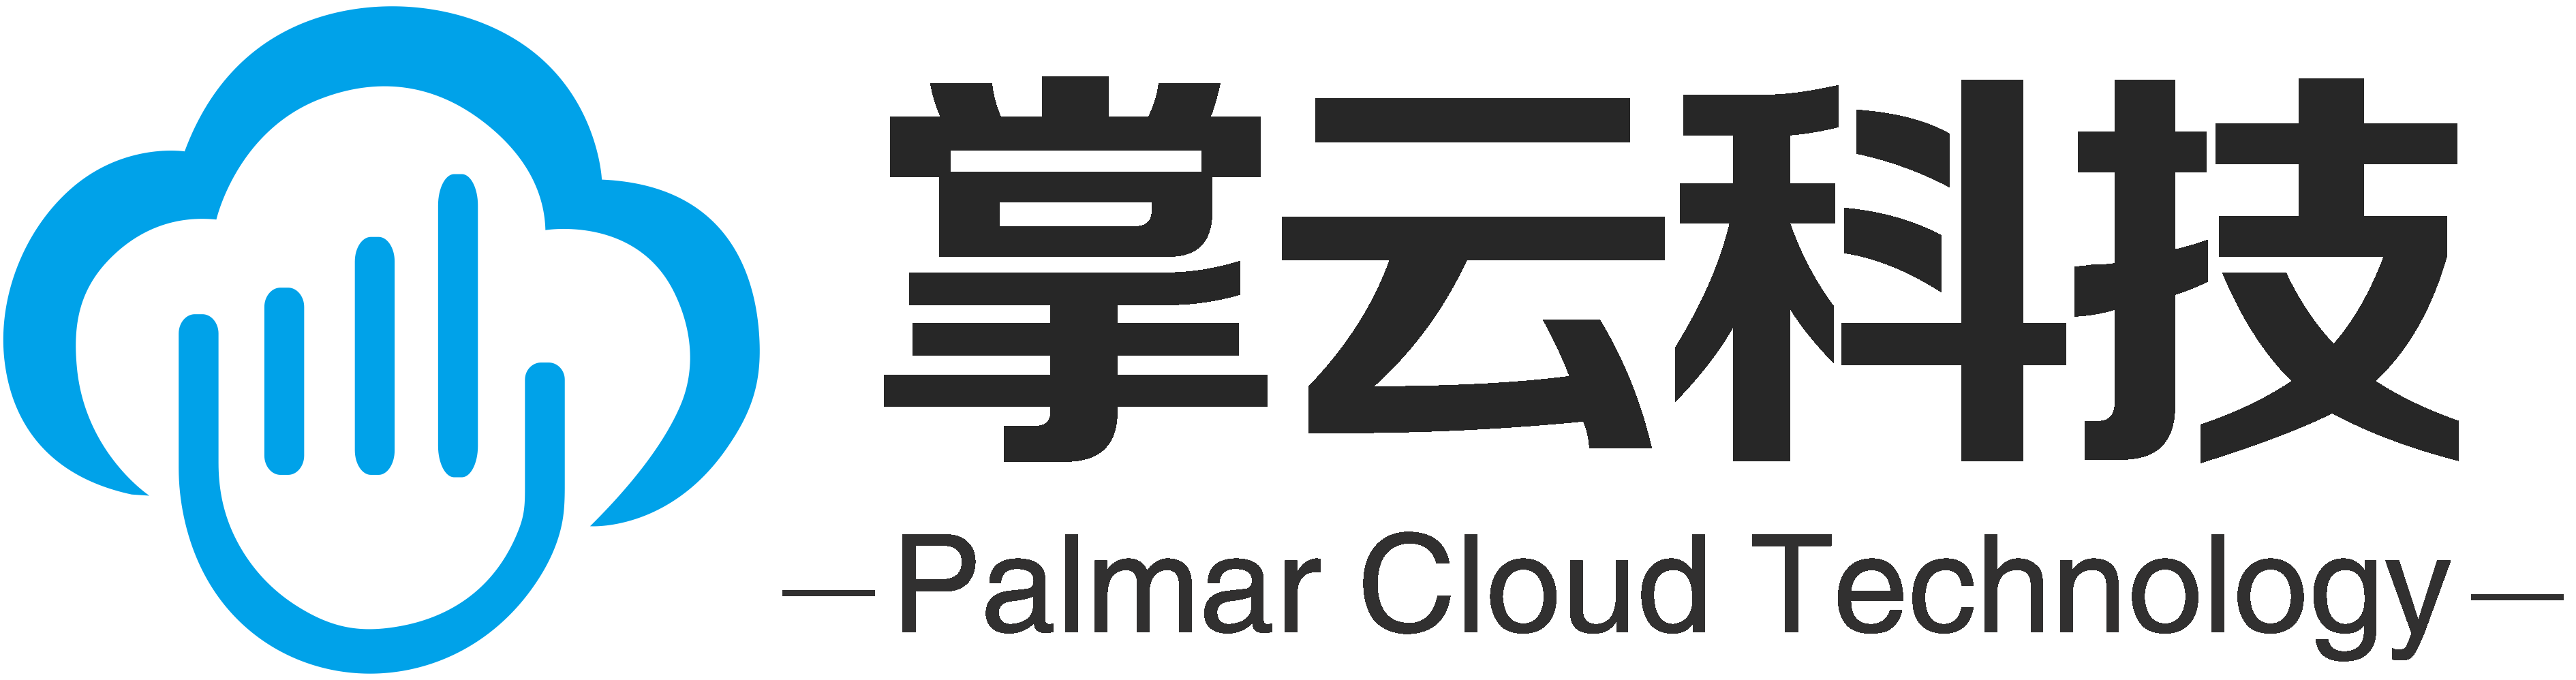 Palmar Cloud Technology